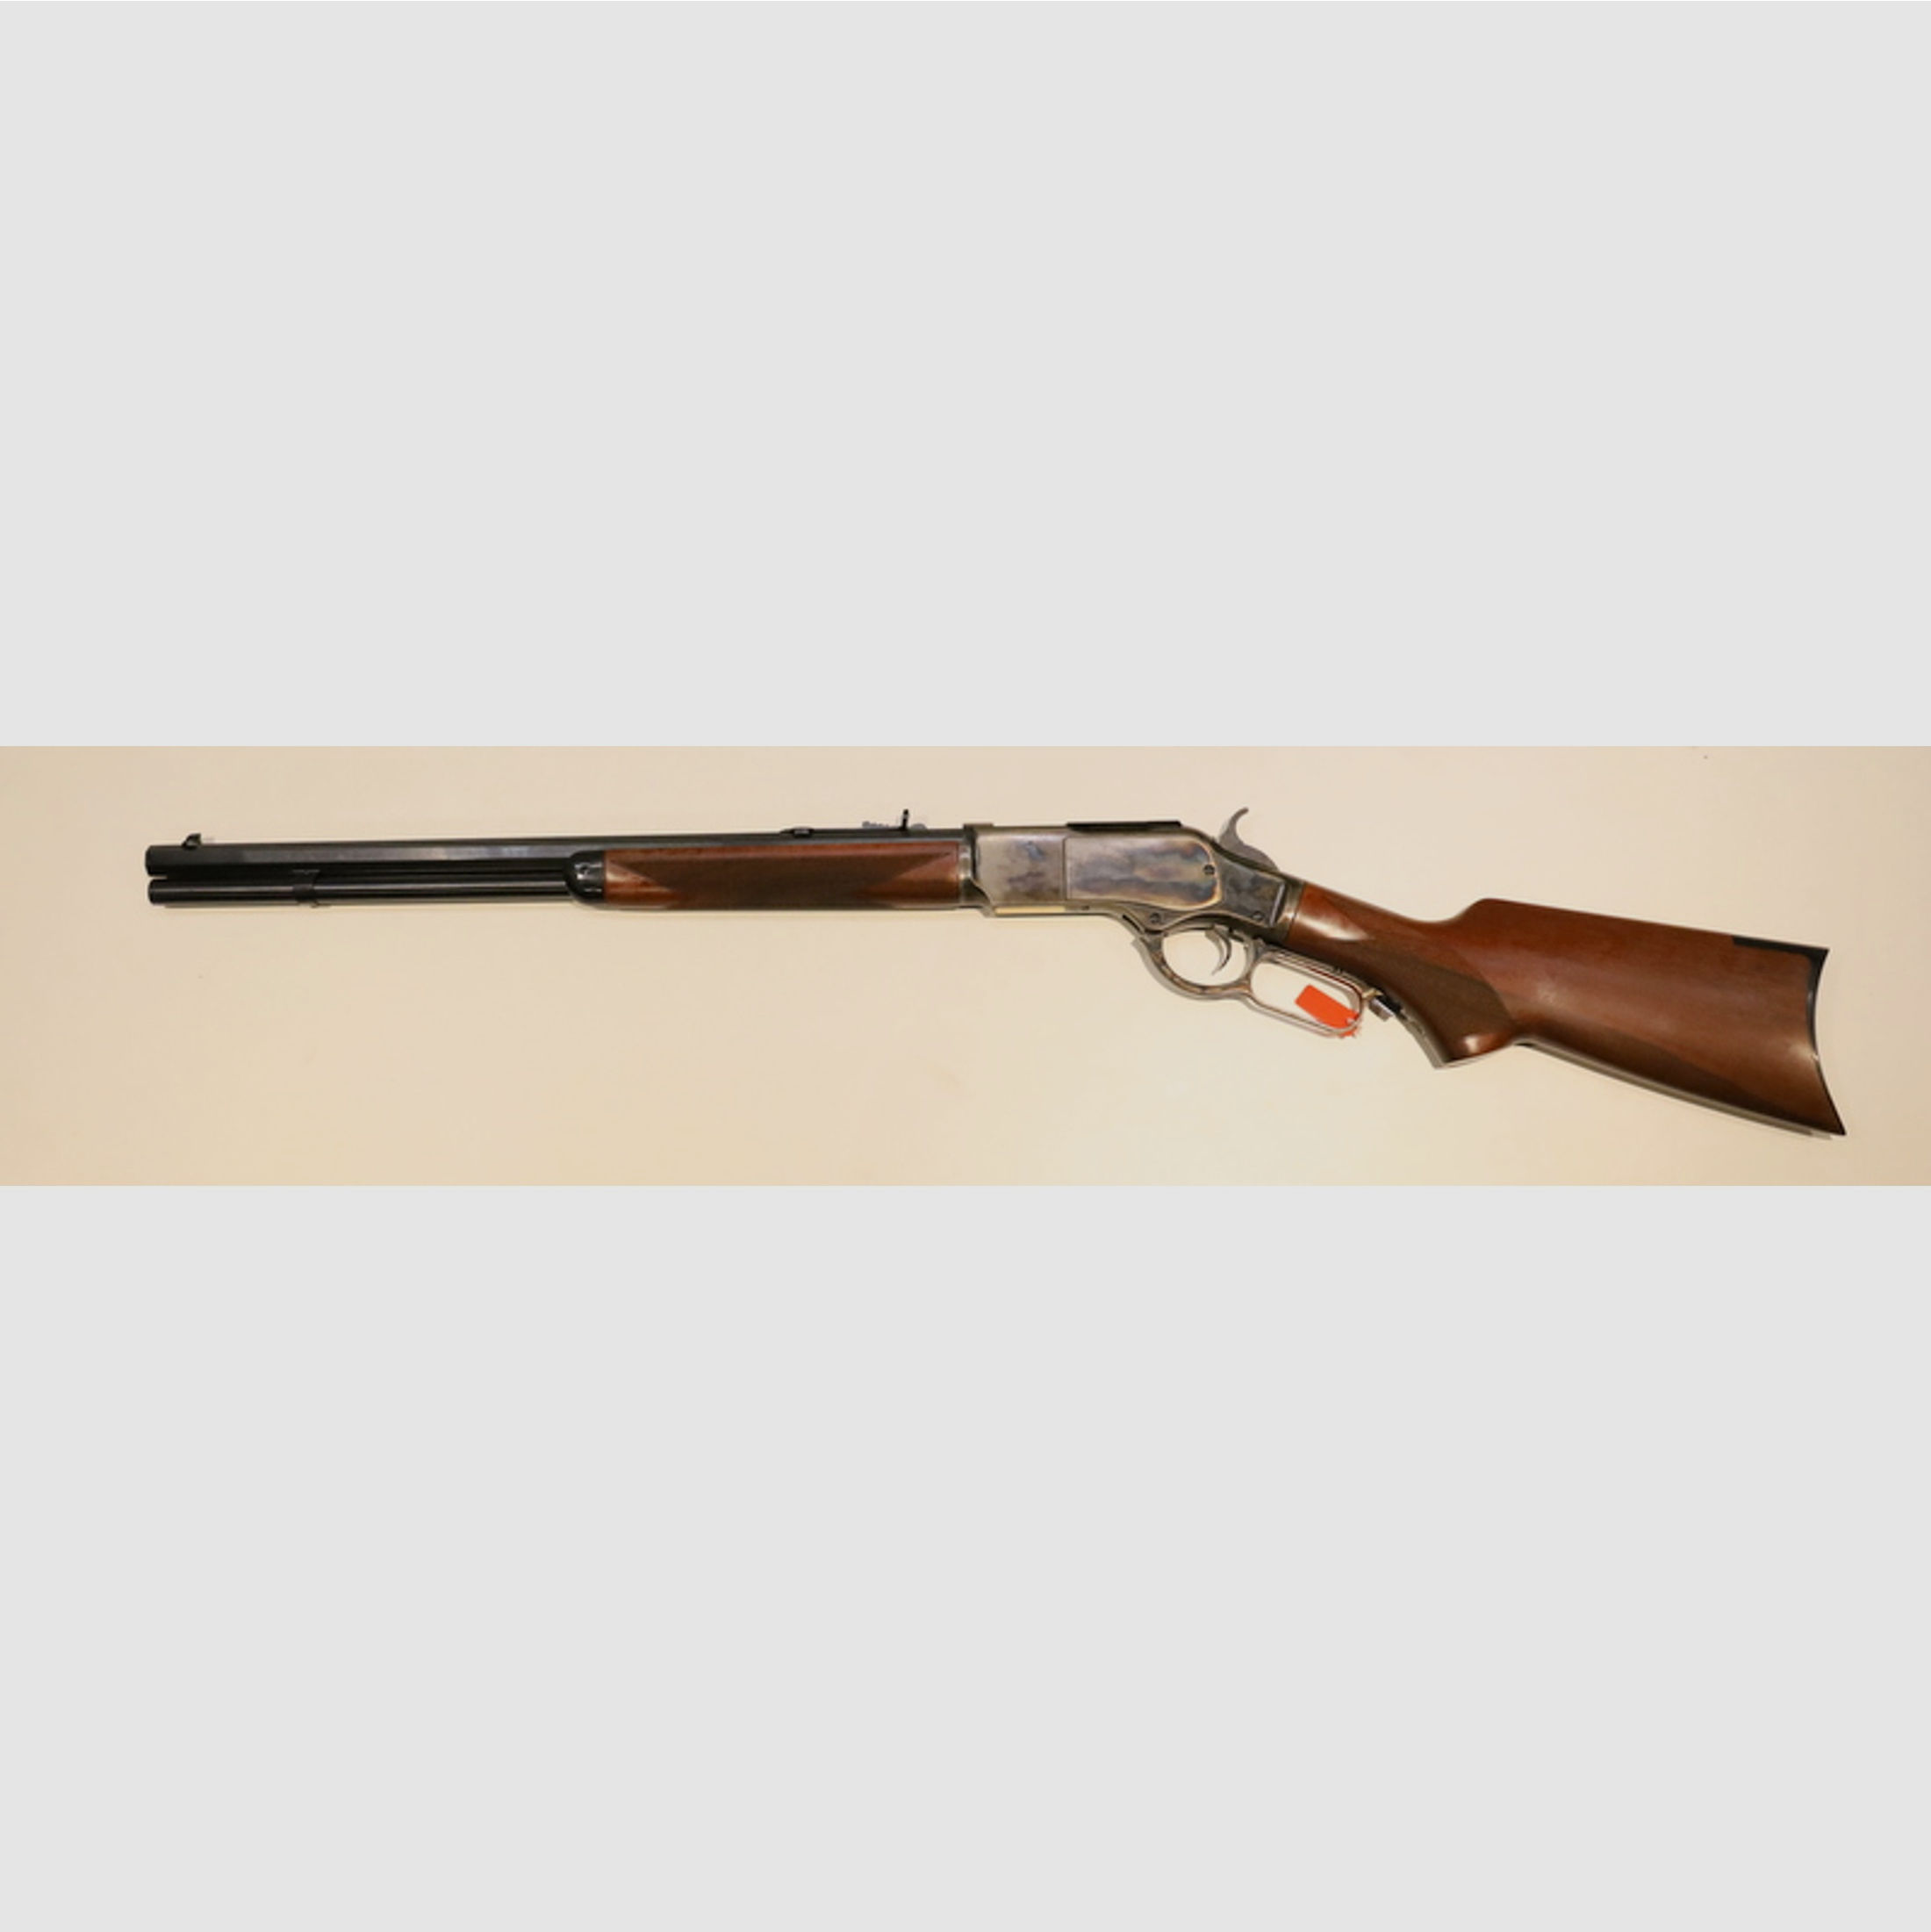 ab 67,58 EUR / Monat --Uberti 1873 Short Rifle | LL 20" | Kal:. 357 Magnum *0 EUR Versand*ab 0% Finanzierung*